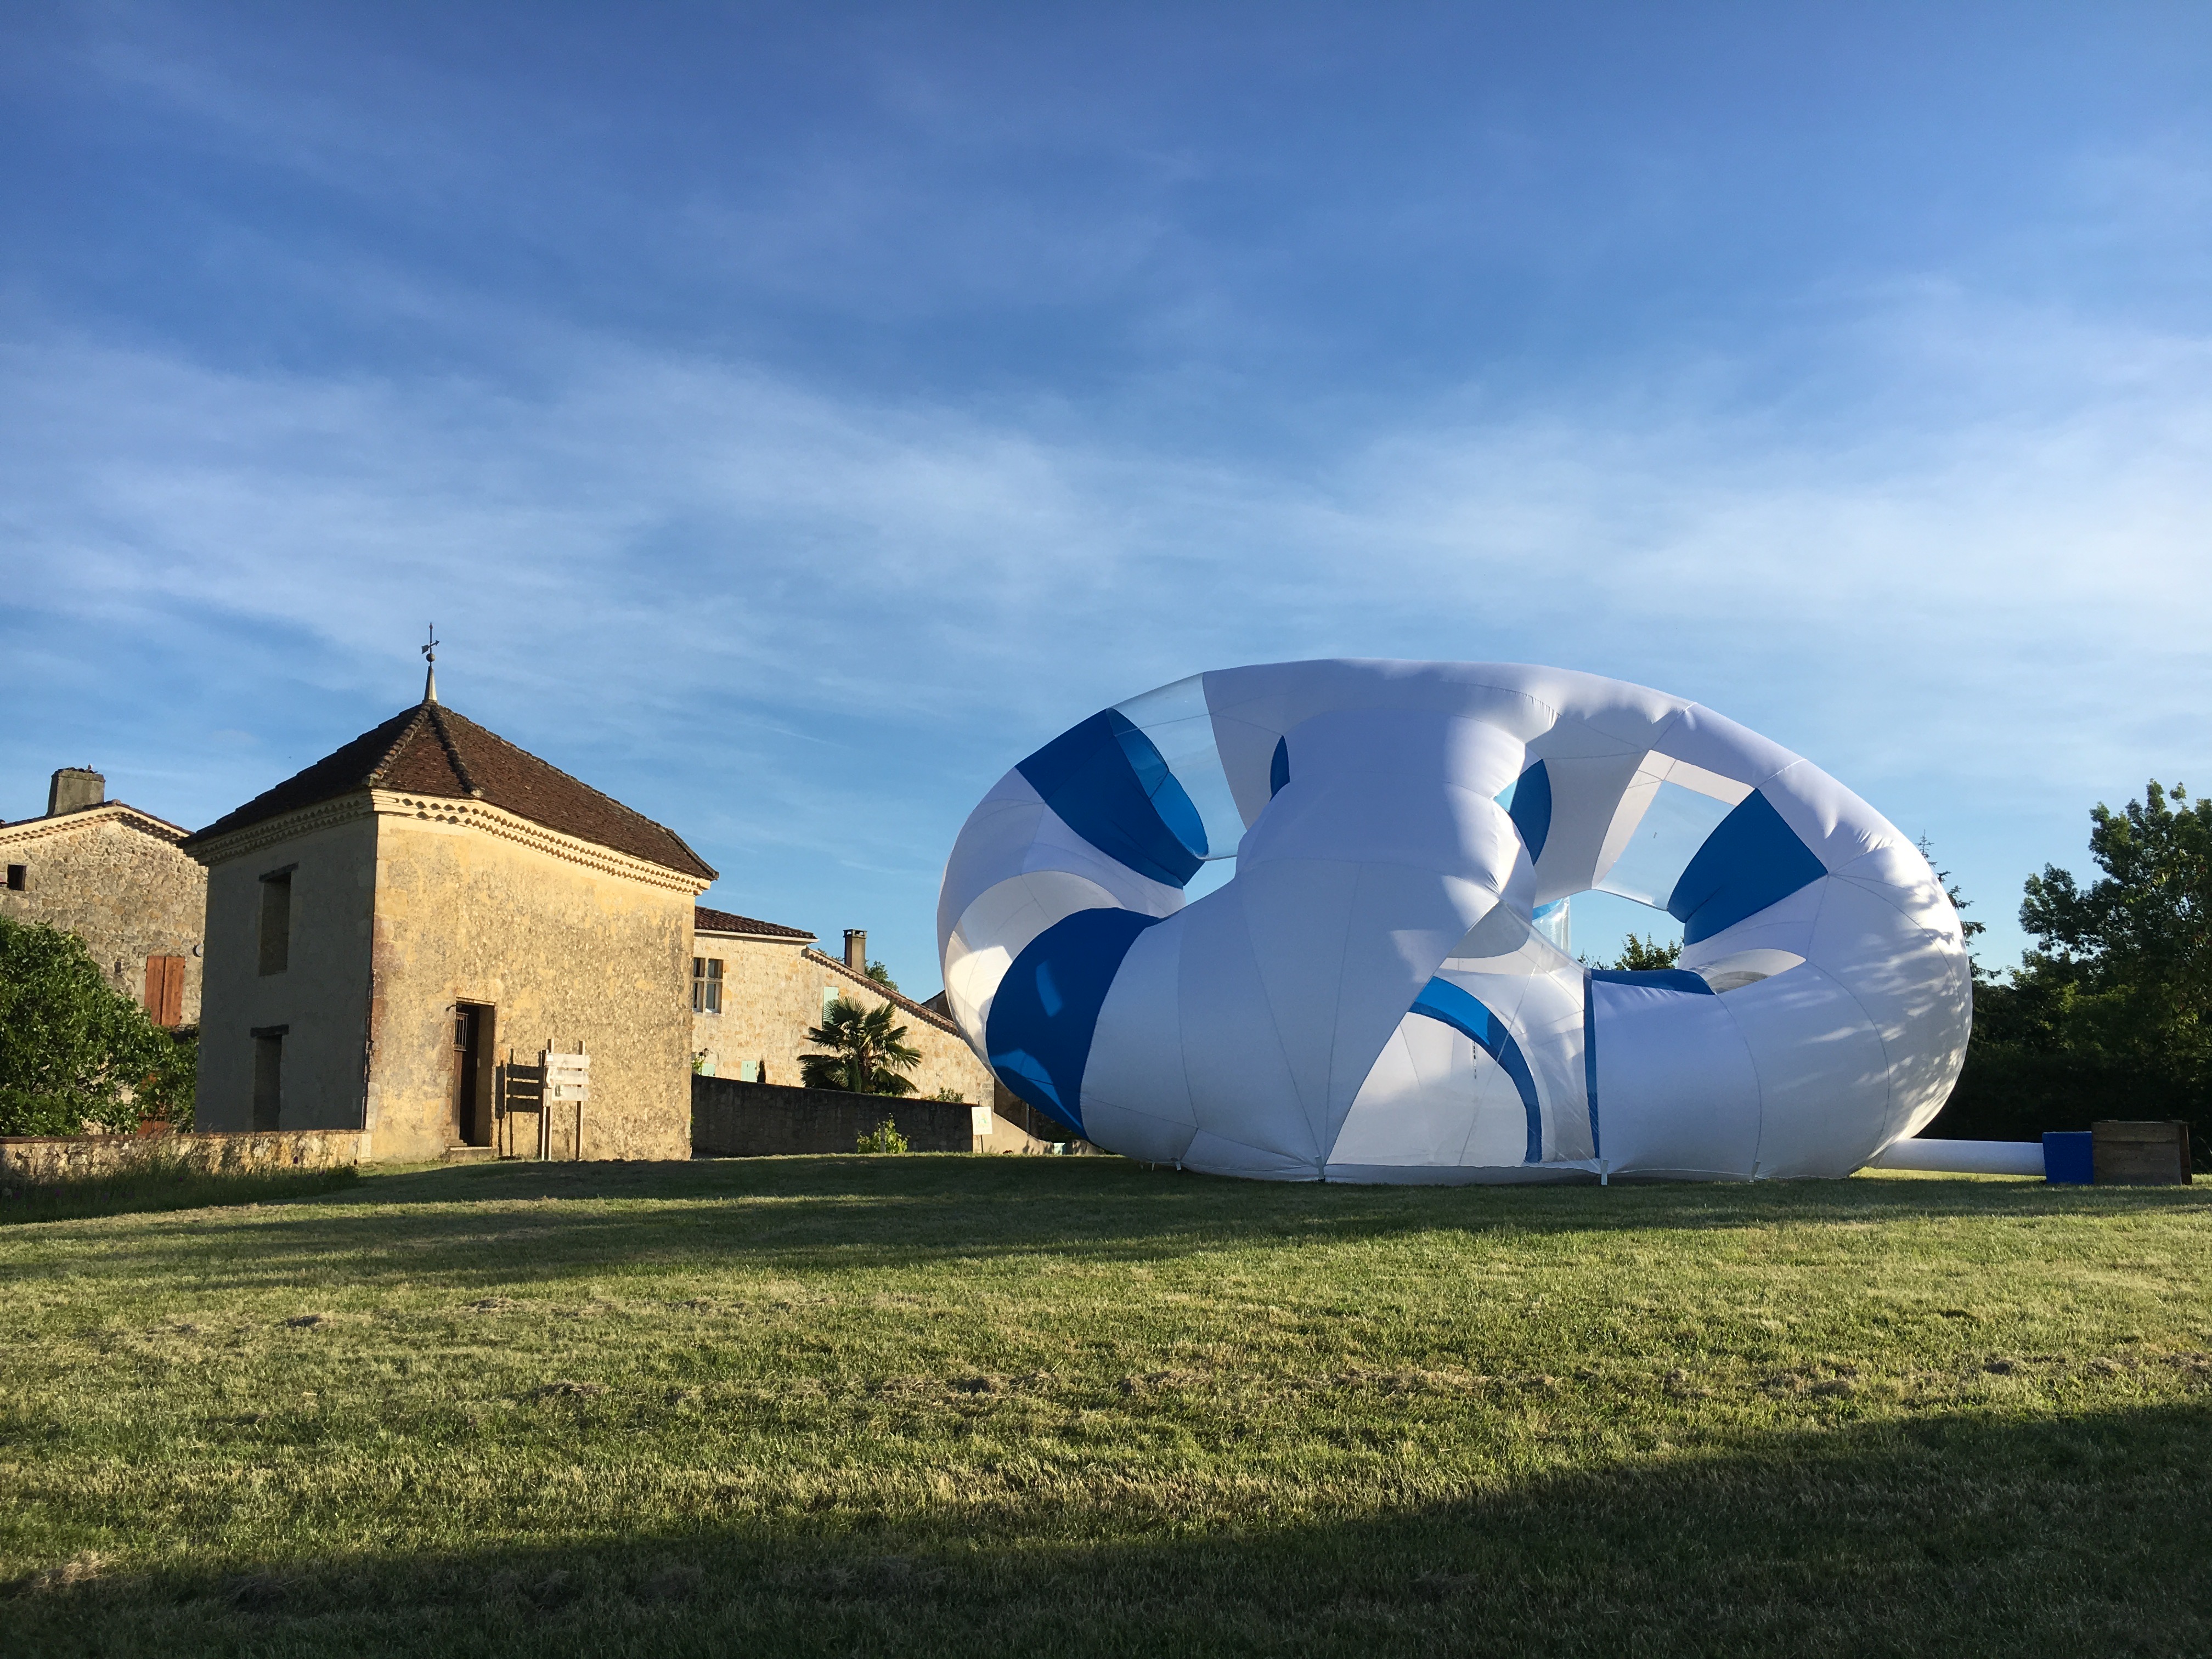 2019, L'architecture gonflable Pézize installé à Maignaut-Tauzia